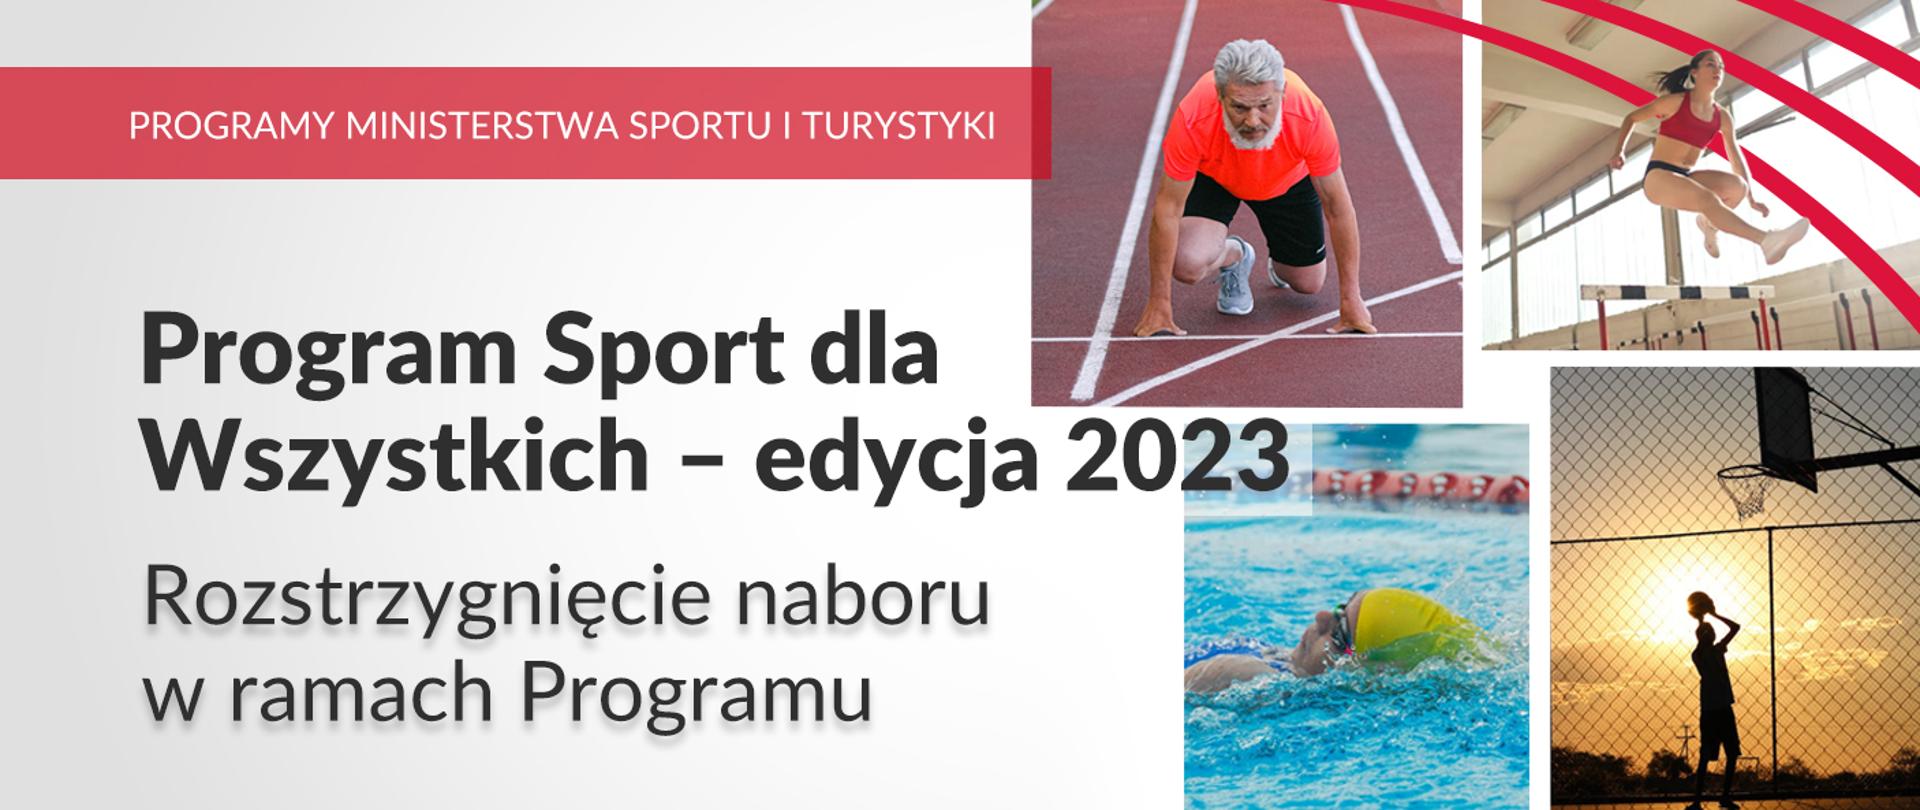 Napis: Program Sport dla Wszystkich - edycja 2023. Rozstrzygnięcie naboru w ramach Programu. Grafiki z ludźmi uprawiającymi sport